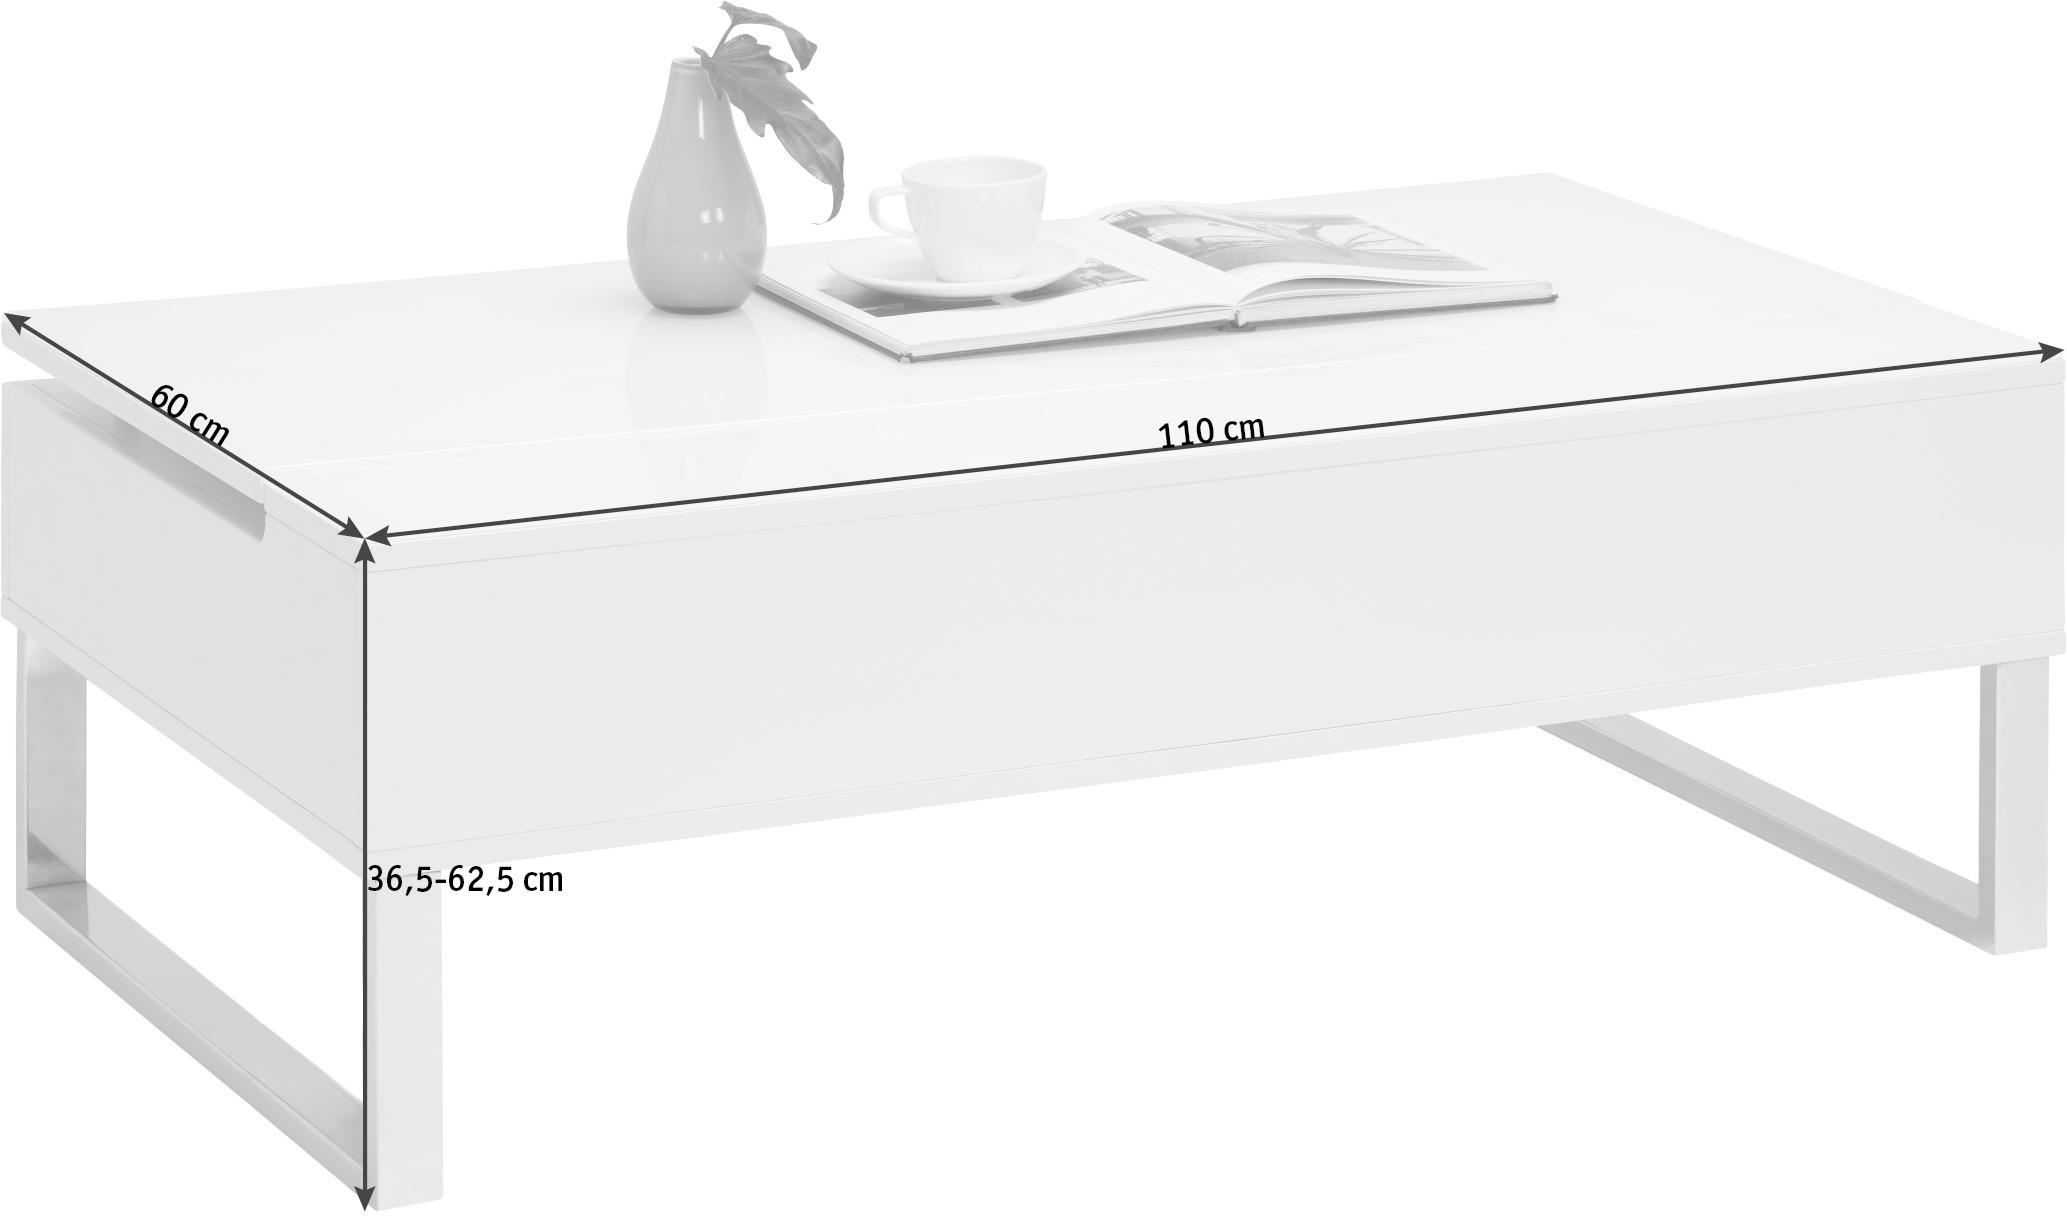 COUCHTISCH rechteckig Weiß  - Silberfarben/Weiß, Design, Glas/Metall (110/60/36,5-62,5cm) - Xora